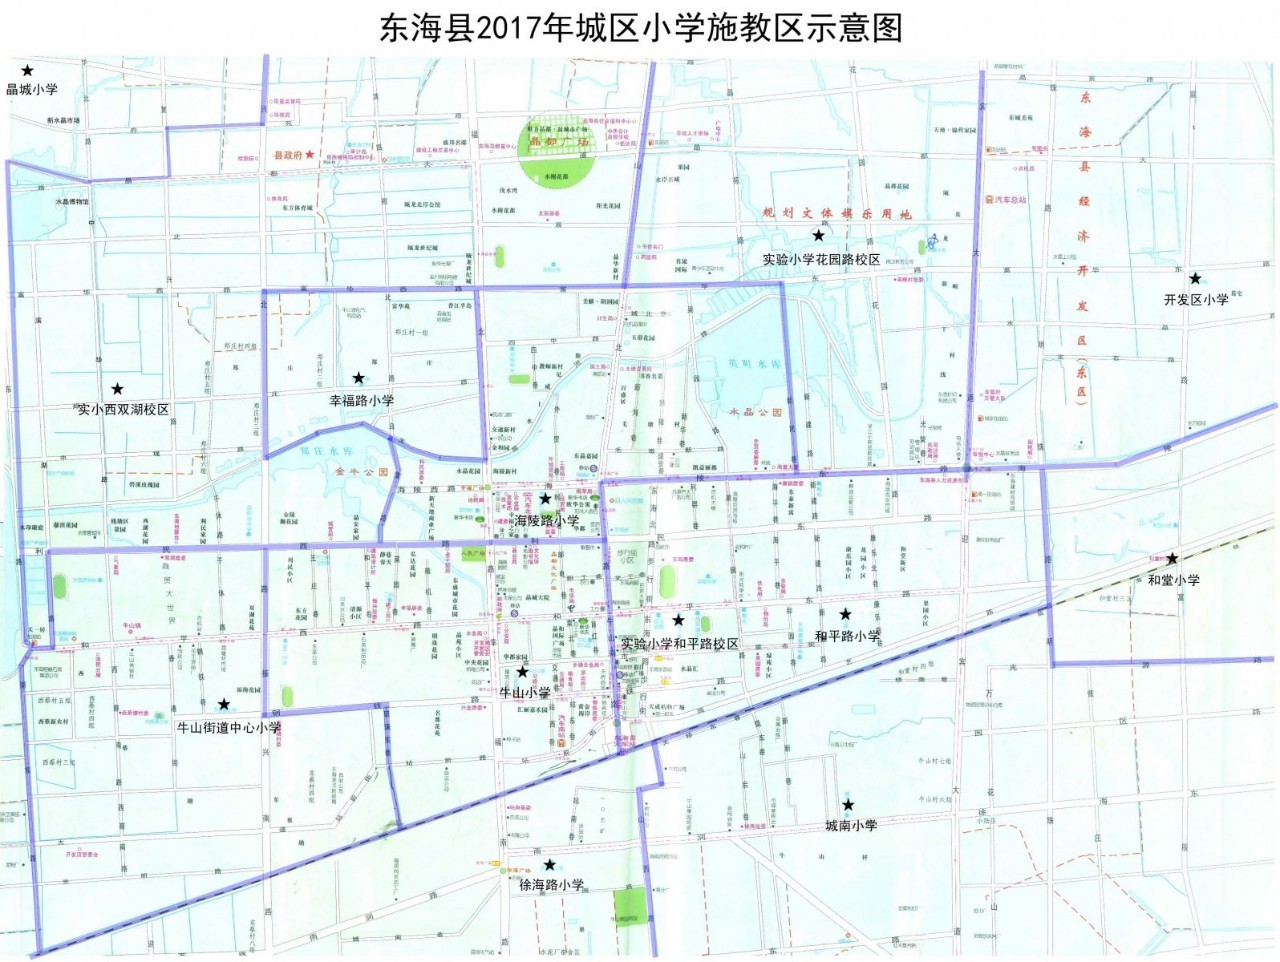 东海县2017年城区(牛山街道)公办小学施教区示意图